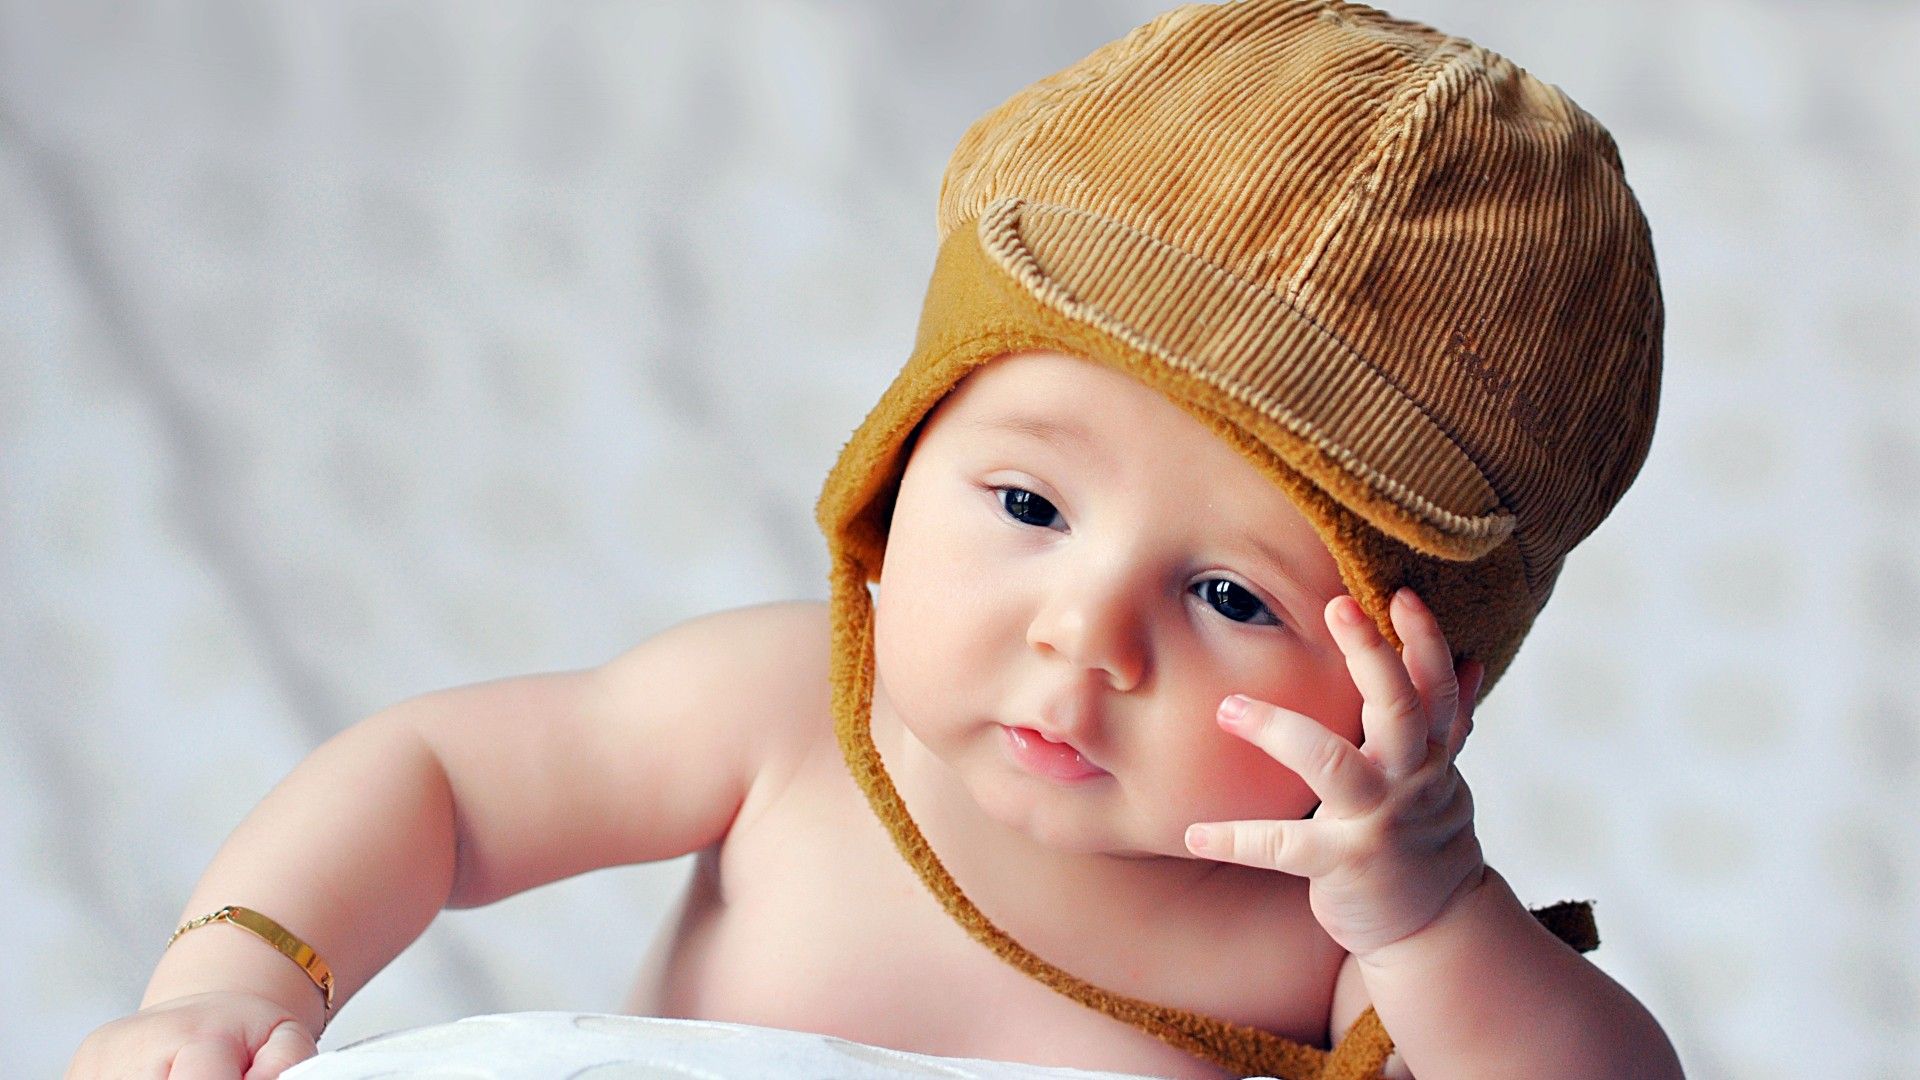 Top 500 hình ảnh hoa baby đẹp tinh khôi đáng yêu như trẻ thơ